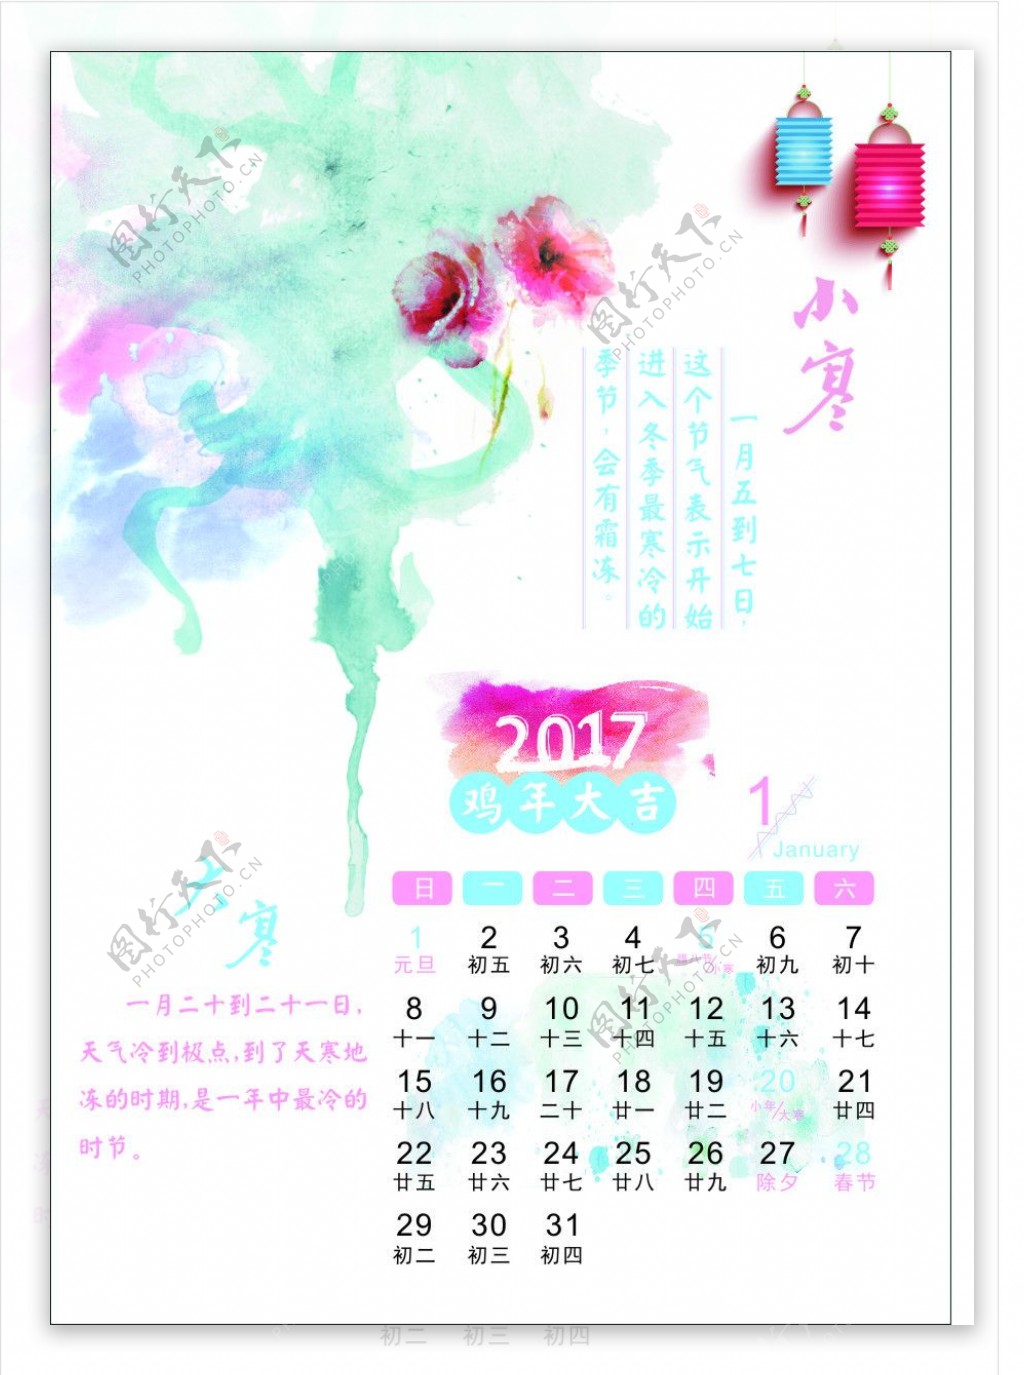 2017年艺术创意日历1月